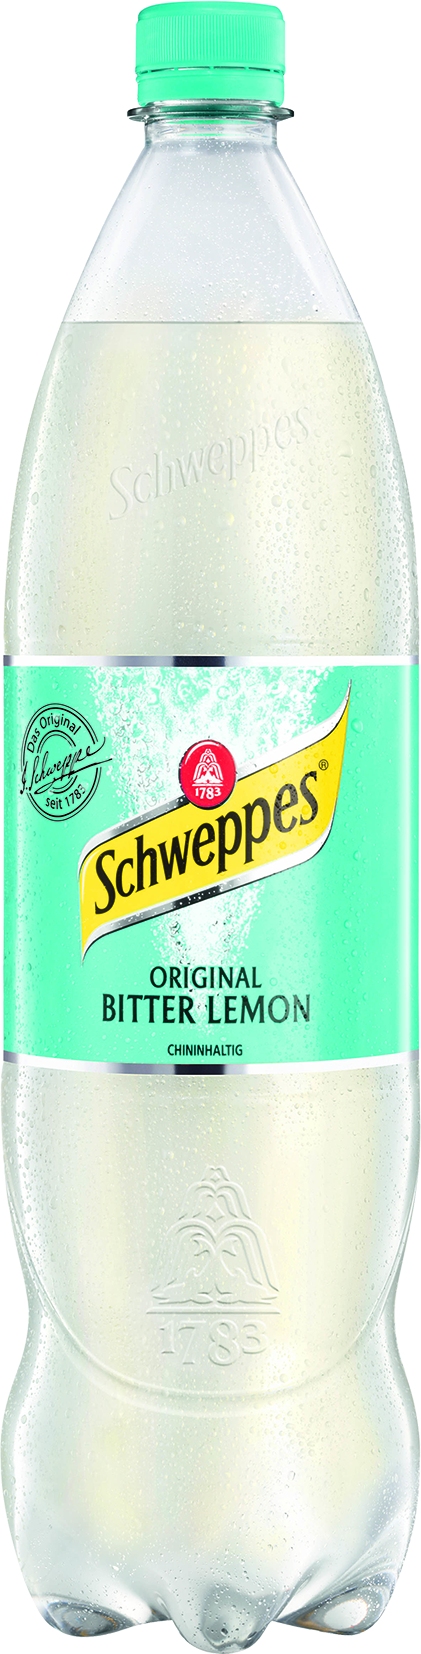 Schweppes Bitter Lemon PET   